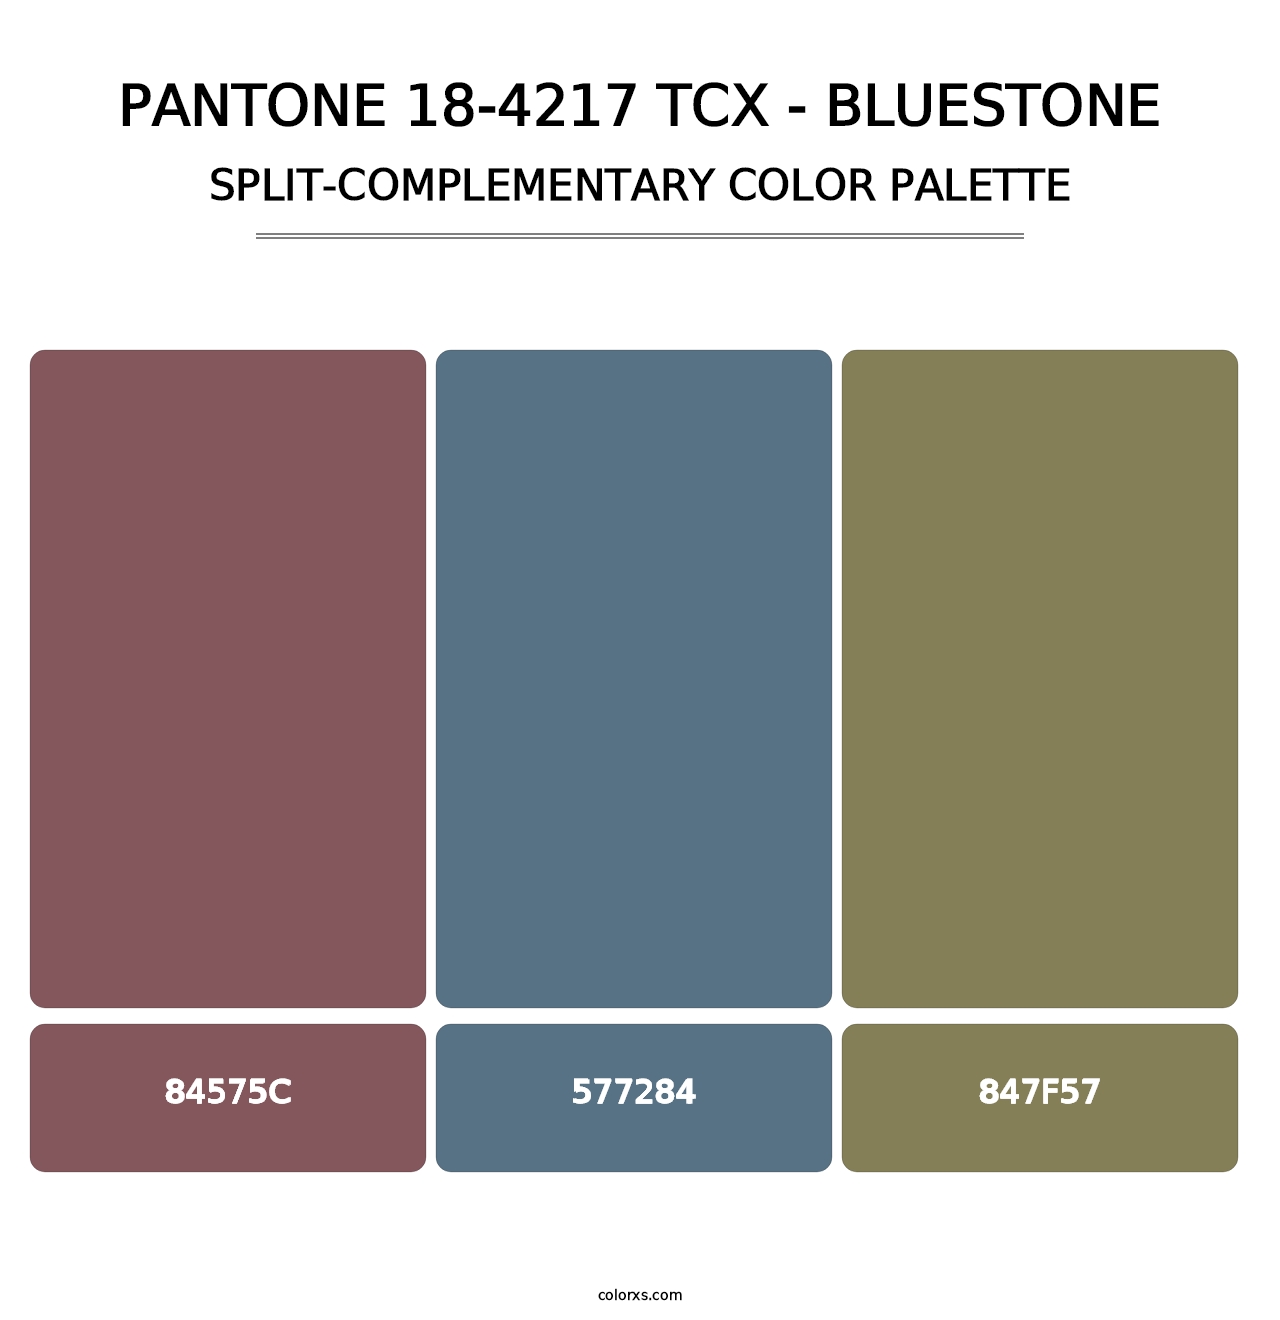 PANTONE 18-4217 TCX - Bluestone - Split-Complementary Color Palette